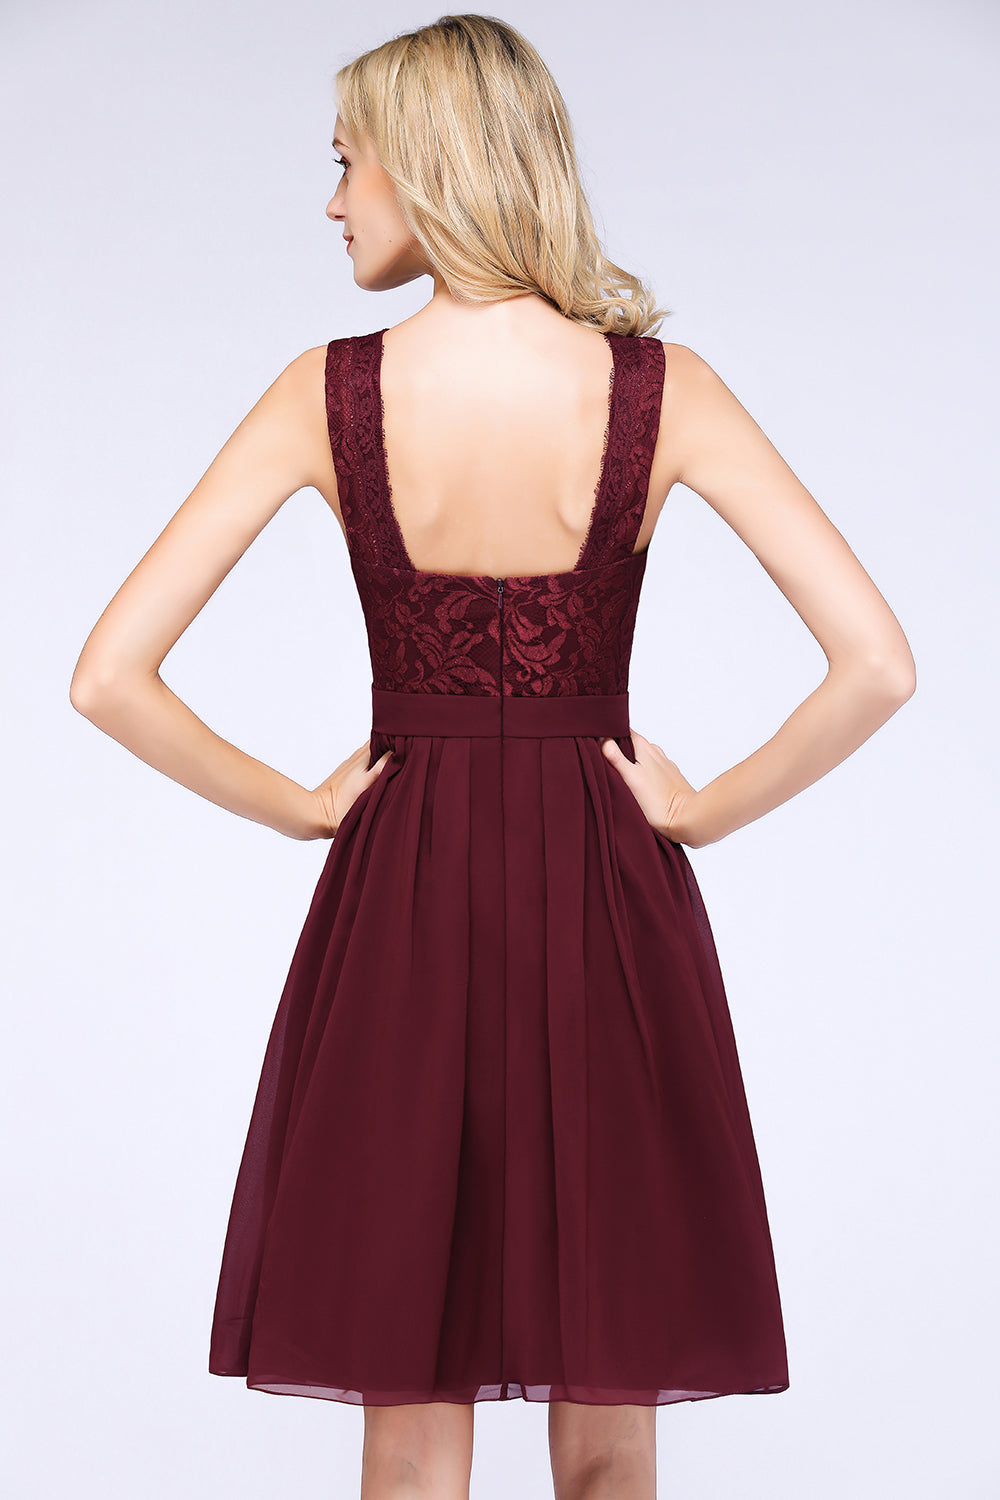 Elegant Lace V-Neck Short Burgundy Chiffon Bridesmaid Dress with Ruffle